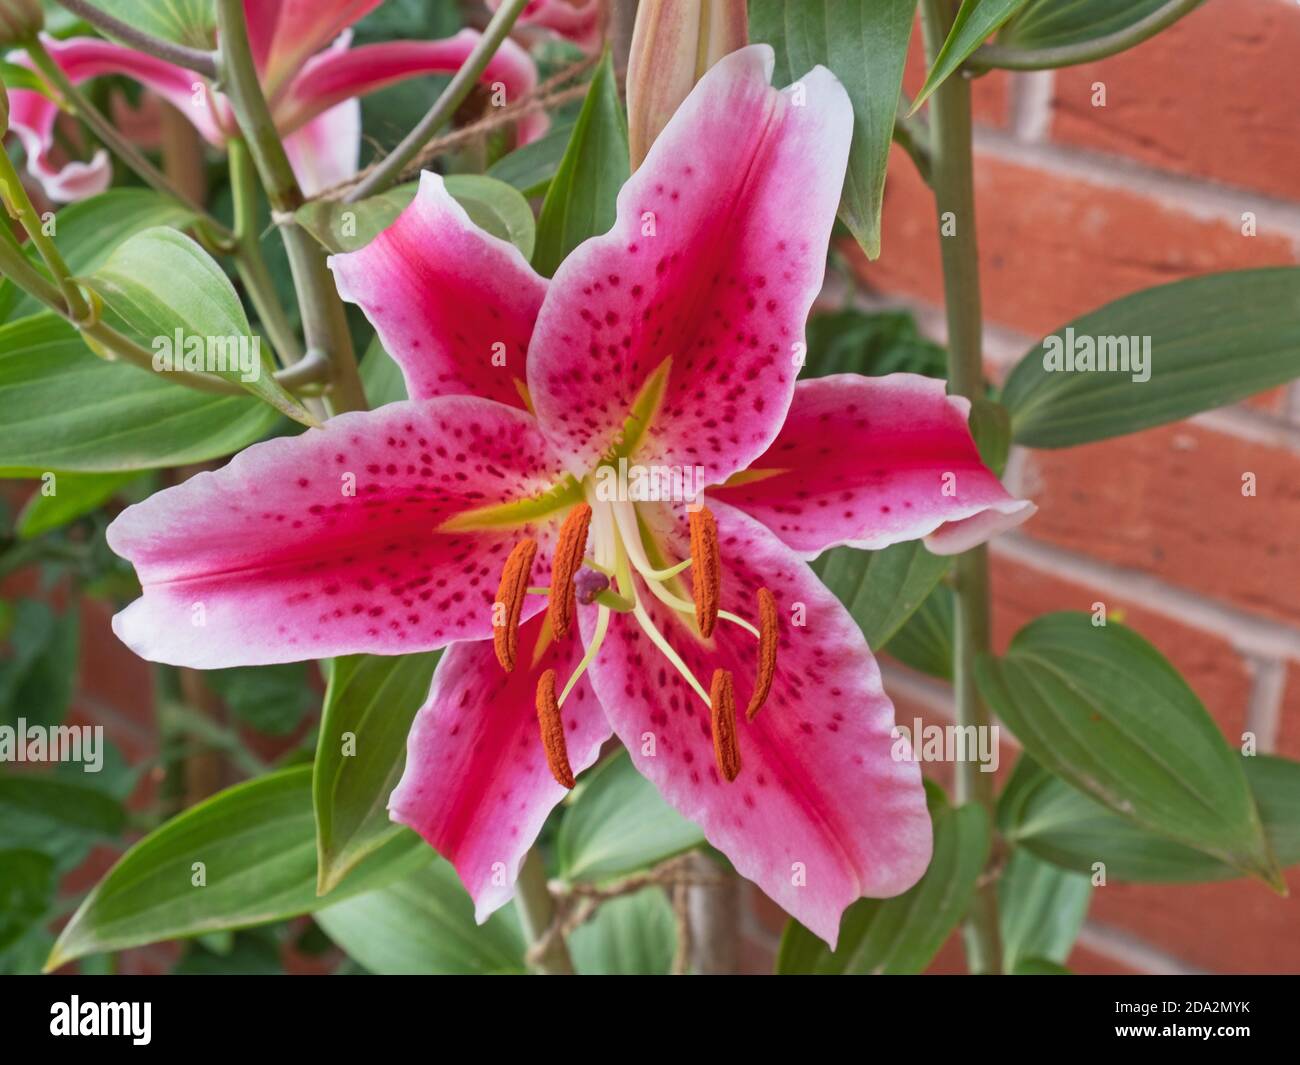 Blumen der Orientalischen Lilien ( Lilium ) Pflanze bekannt als Stargazer  Stockfotografie - Alamy